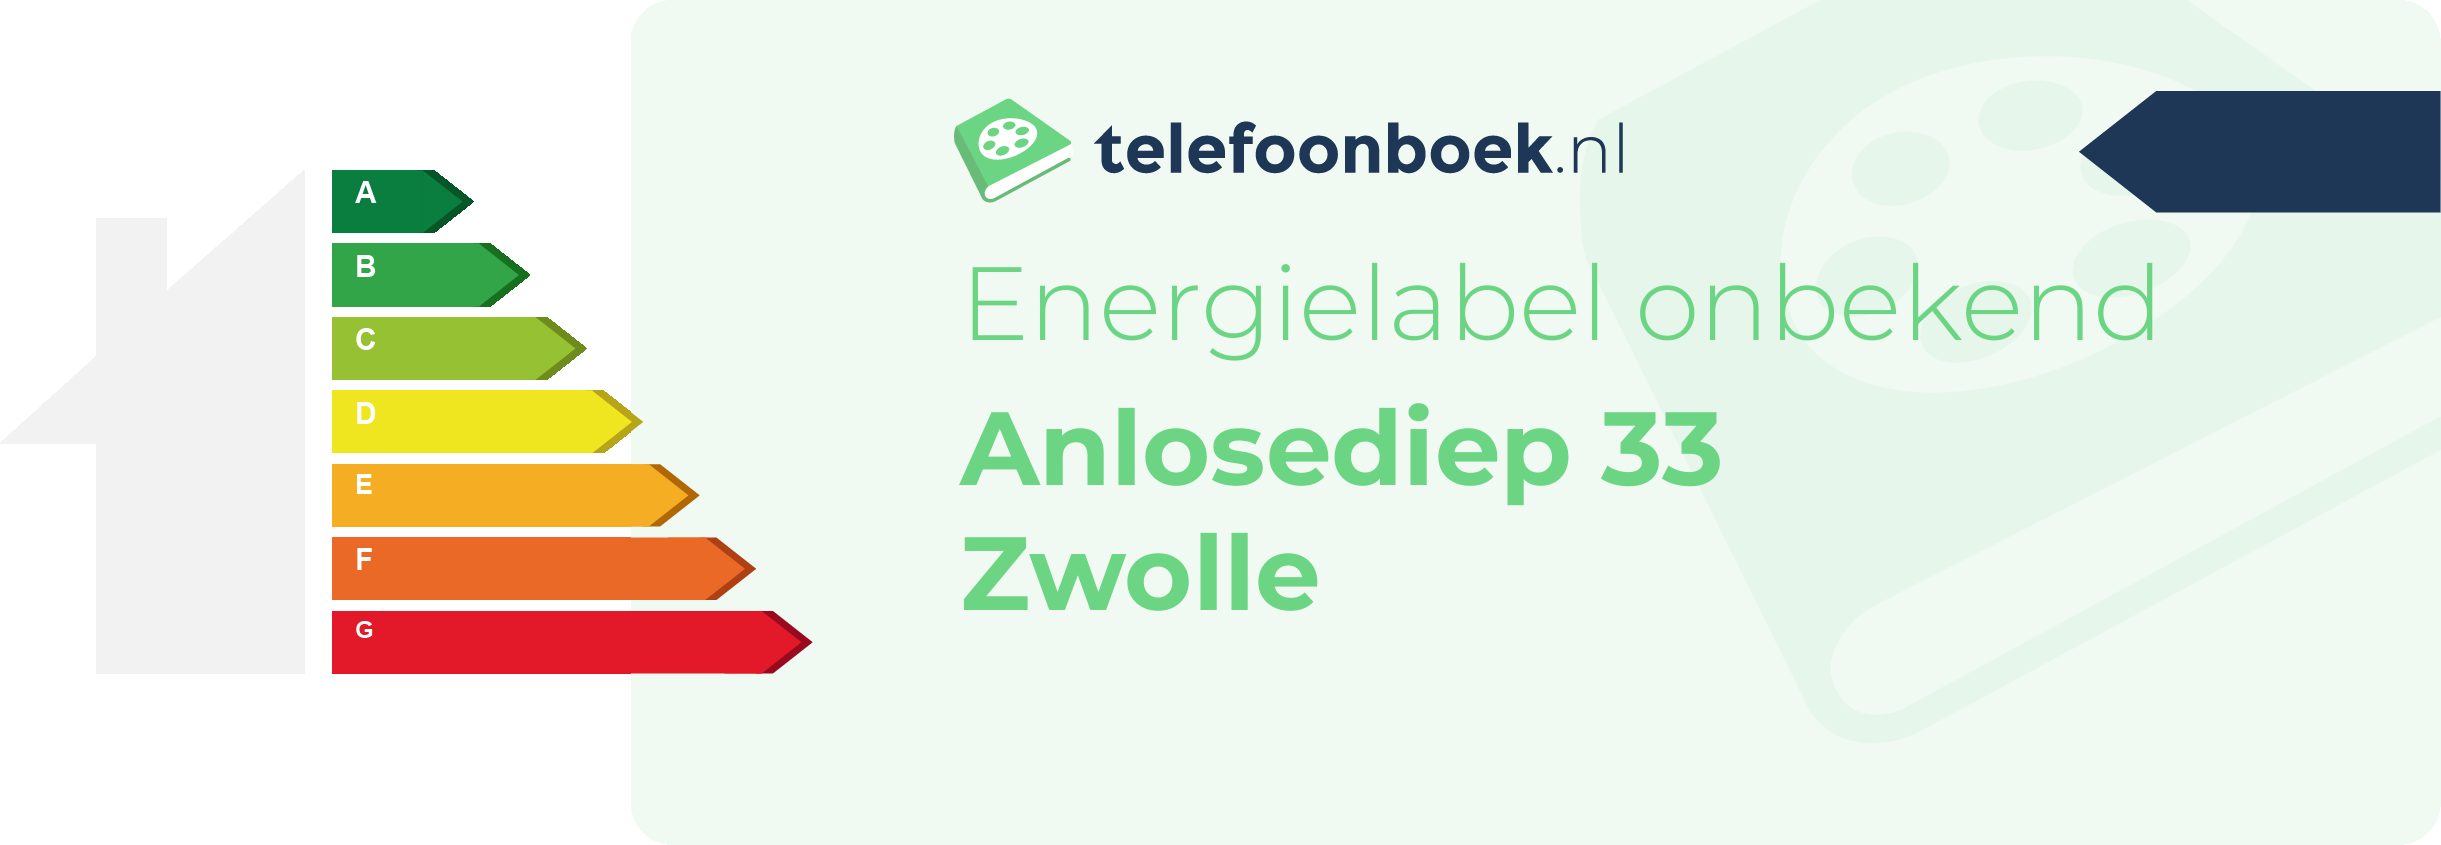 Energielabel Anlosediep 33 Zwolle